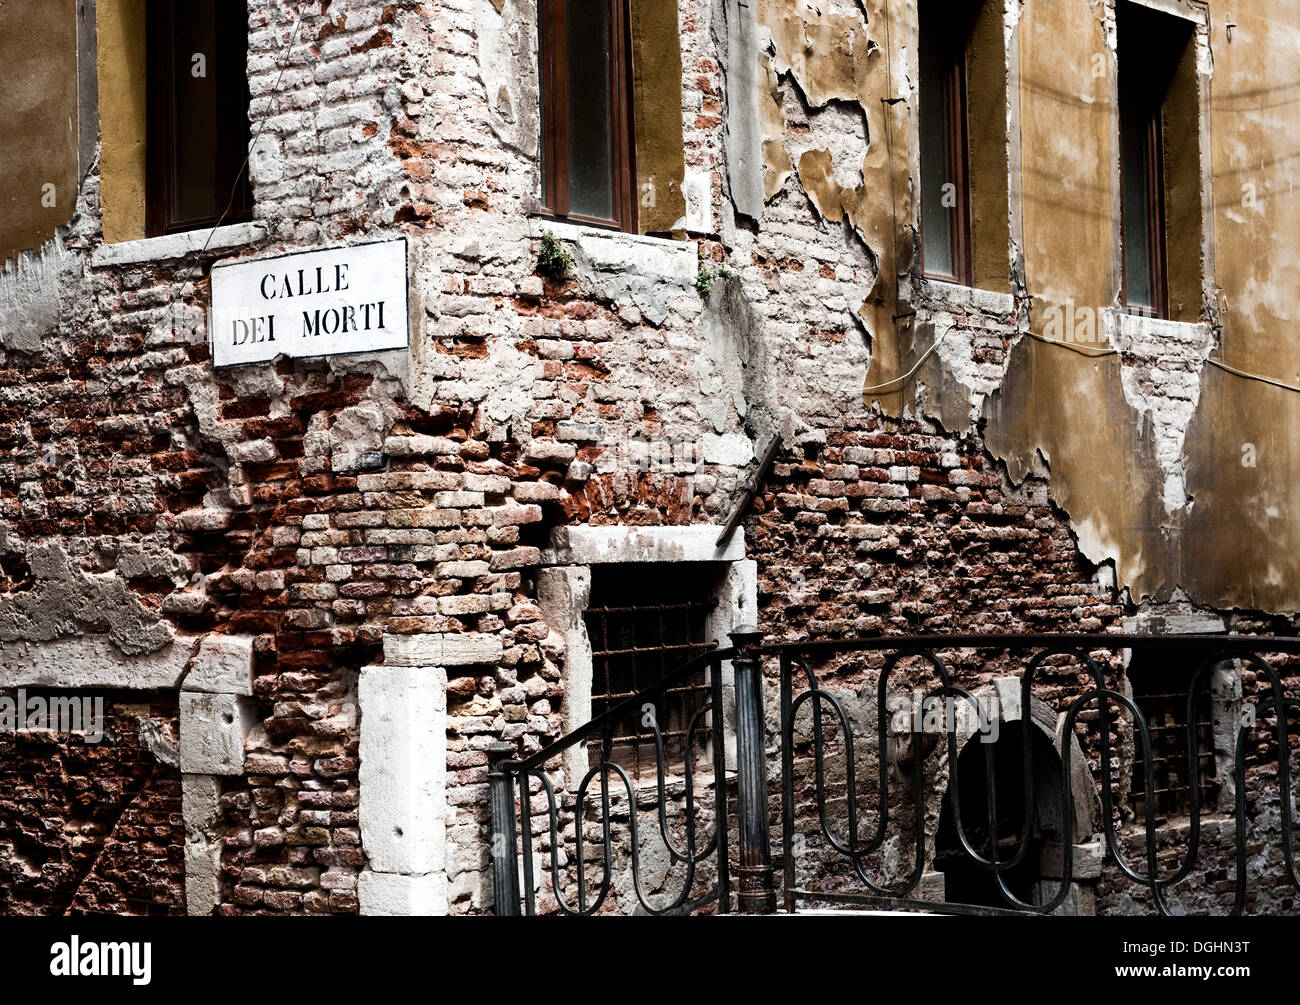 Calle dei Morti, S. Polo distretto, Venezia, Veneto, Italia, Europa Foto Stock